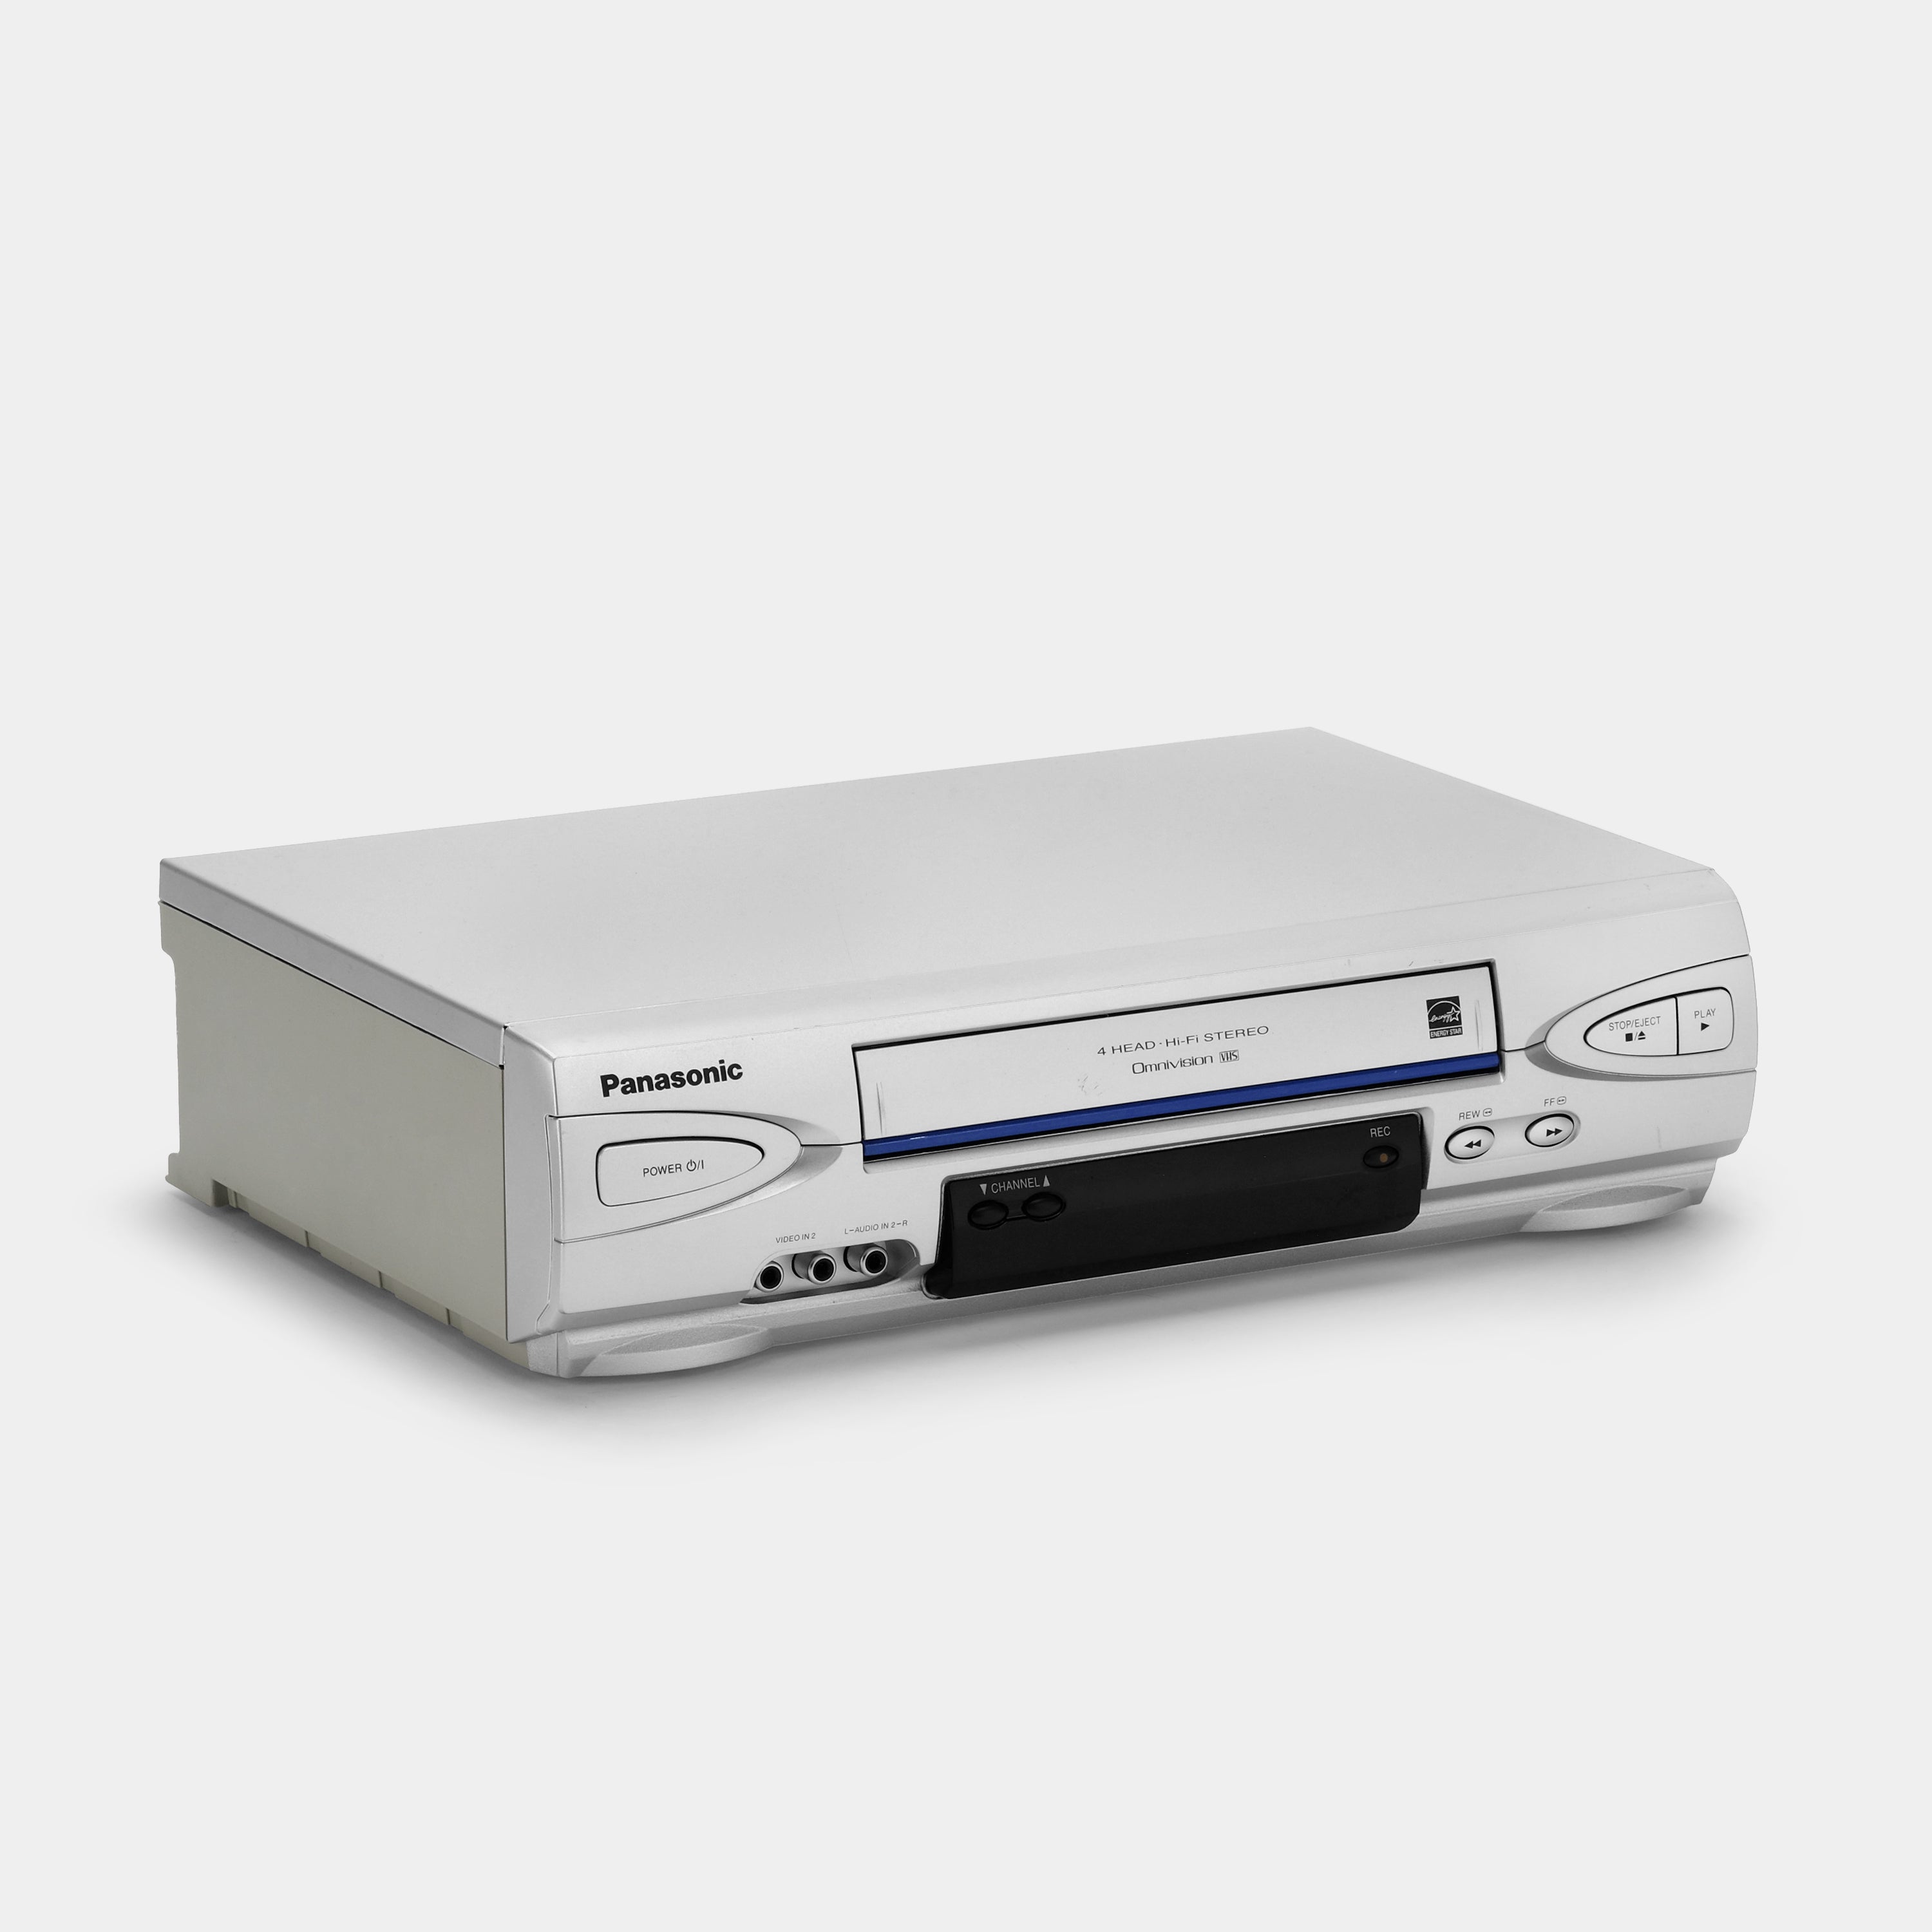 Panasonic PV-V4524S-K VCR VHS Player